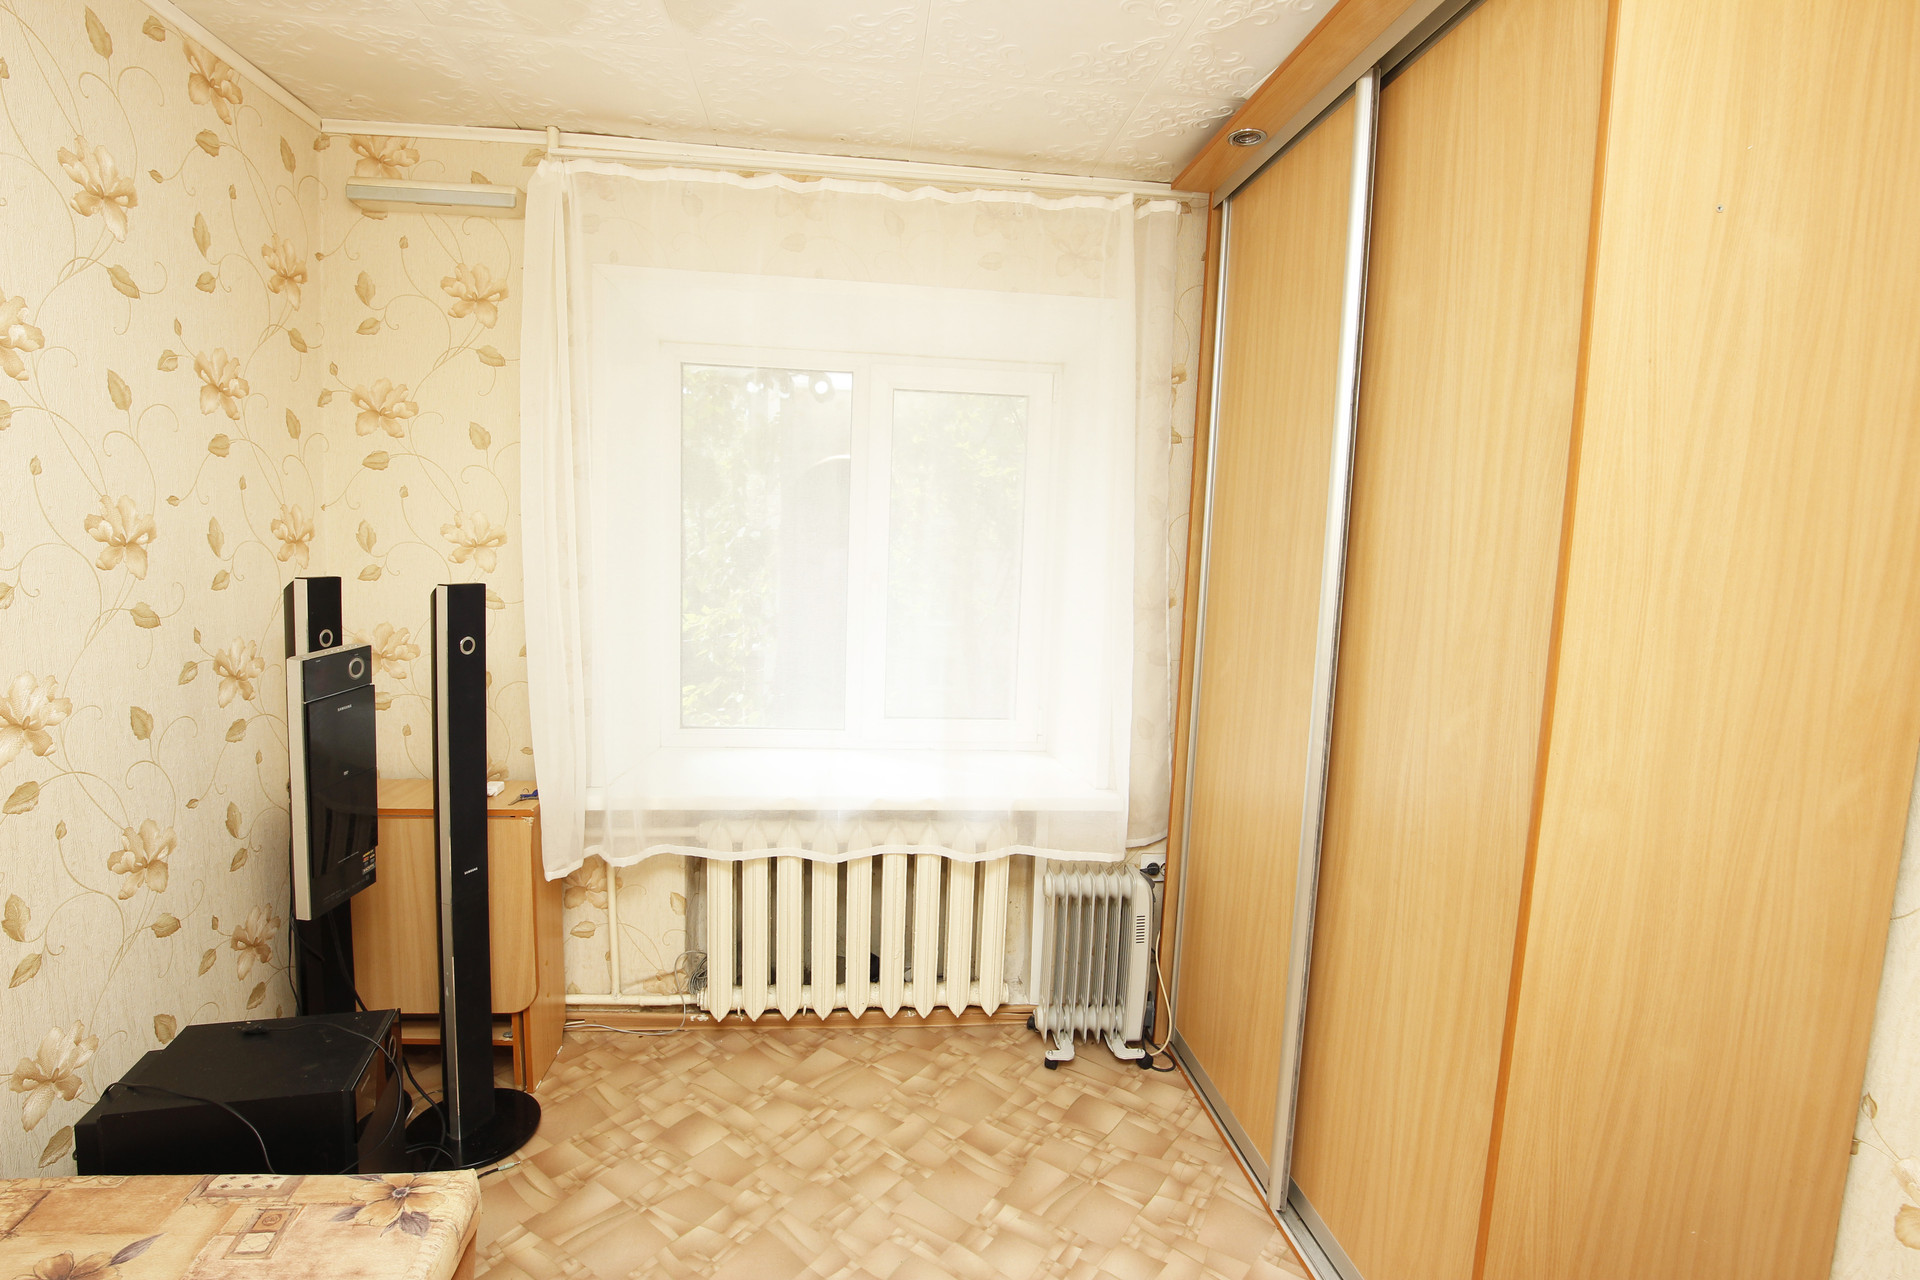 Купить 1 комнатную в ульяновске недорого. Однокомнатная квартира в Ульяновске. Вид из окна при угловых квартирах.